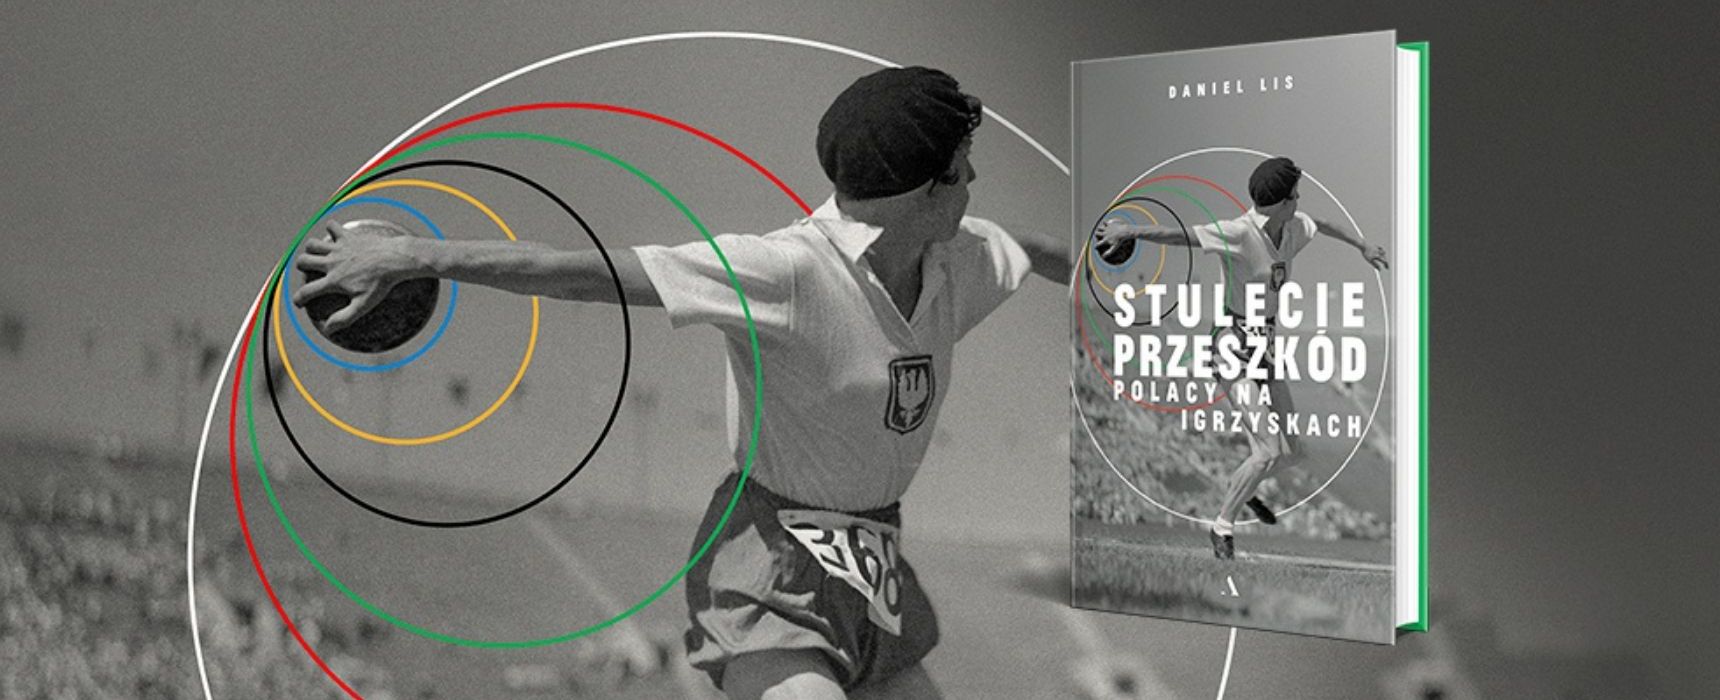 Stulecie przeszkód, czyli historie polskich olimpijczyków